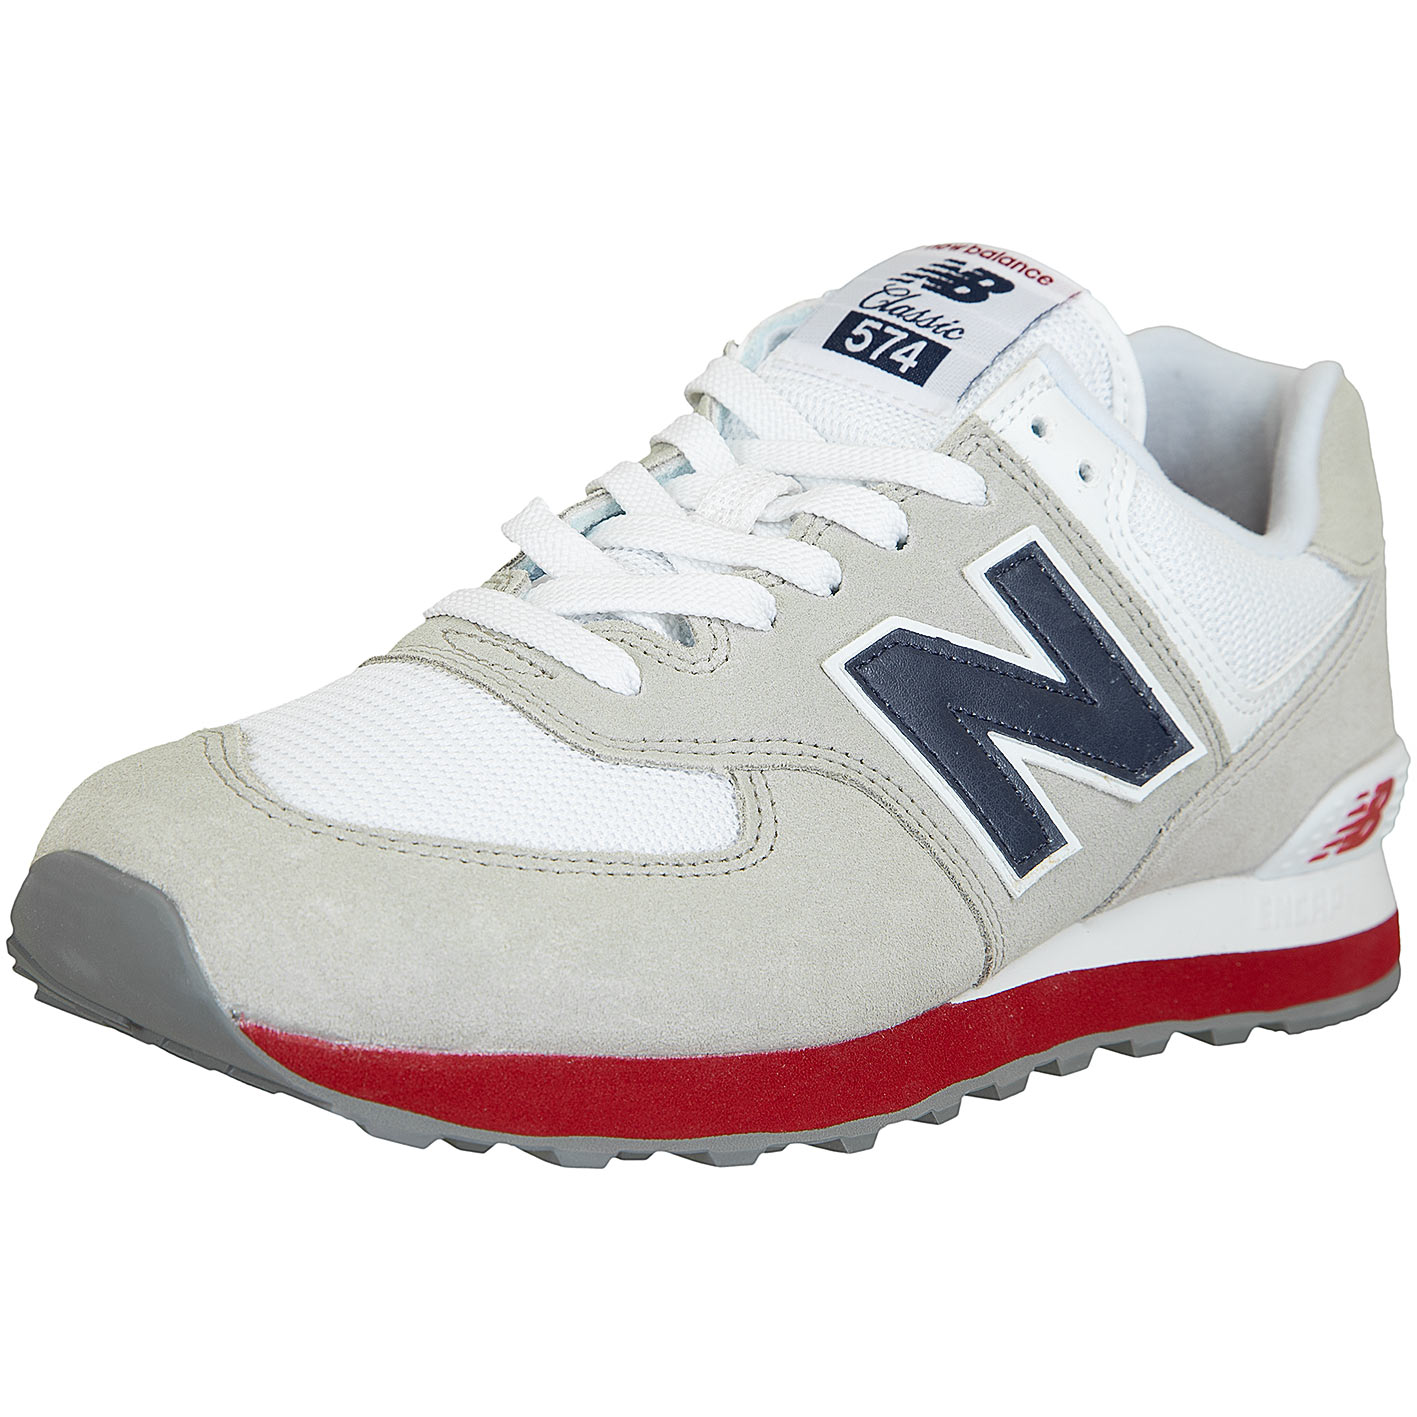 ☆ New Balance Sneaker 574 Wildleder/Textil weiß/grau - hier bestellen!